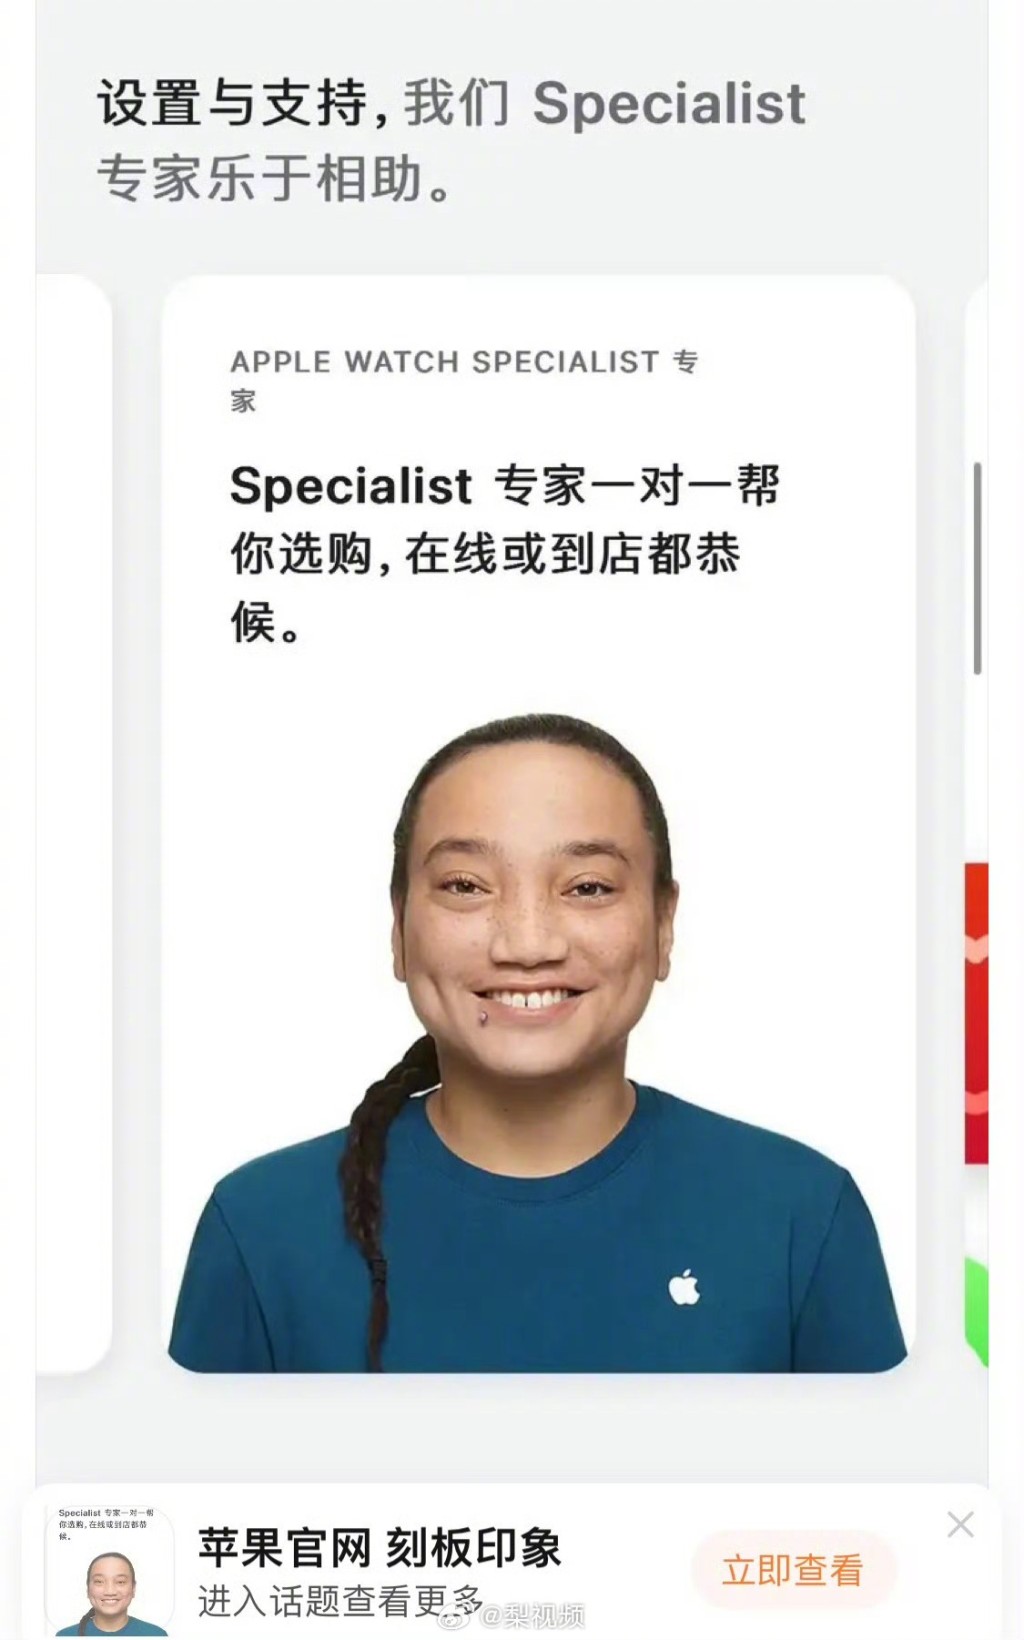 有網民發現蘋果的客服照片是留辮的亞裔人，認為是以清朝形象來嘲諷中國人。微博